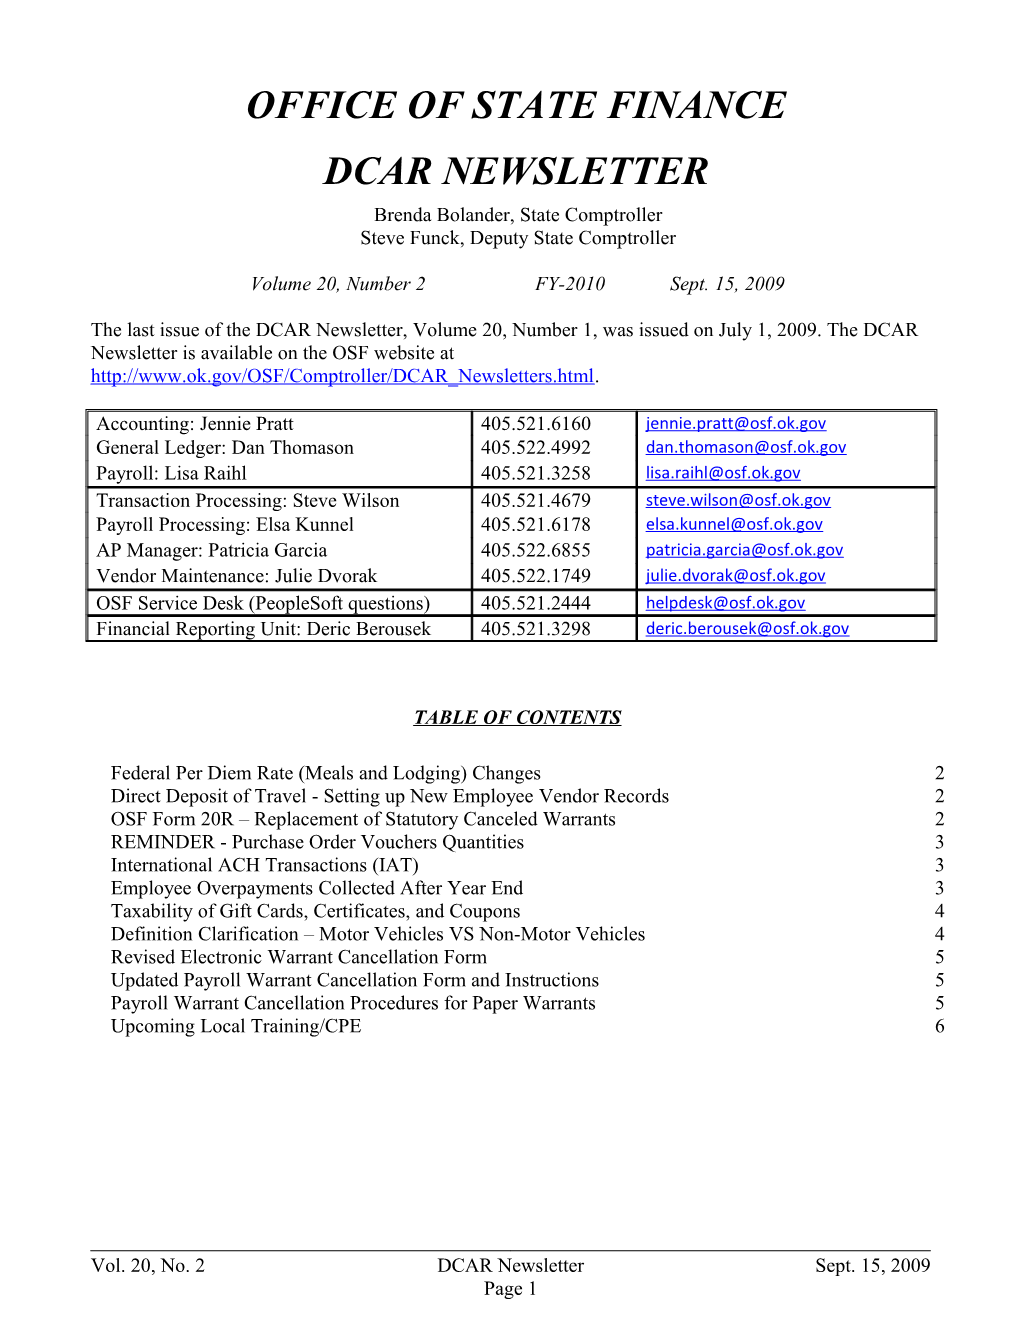 Office of State Finance DCAR Newsletter, September 2009